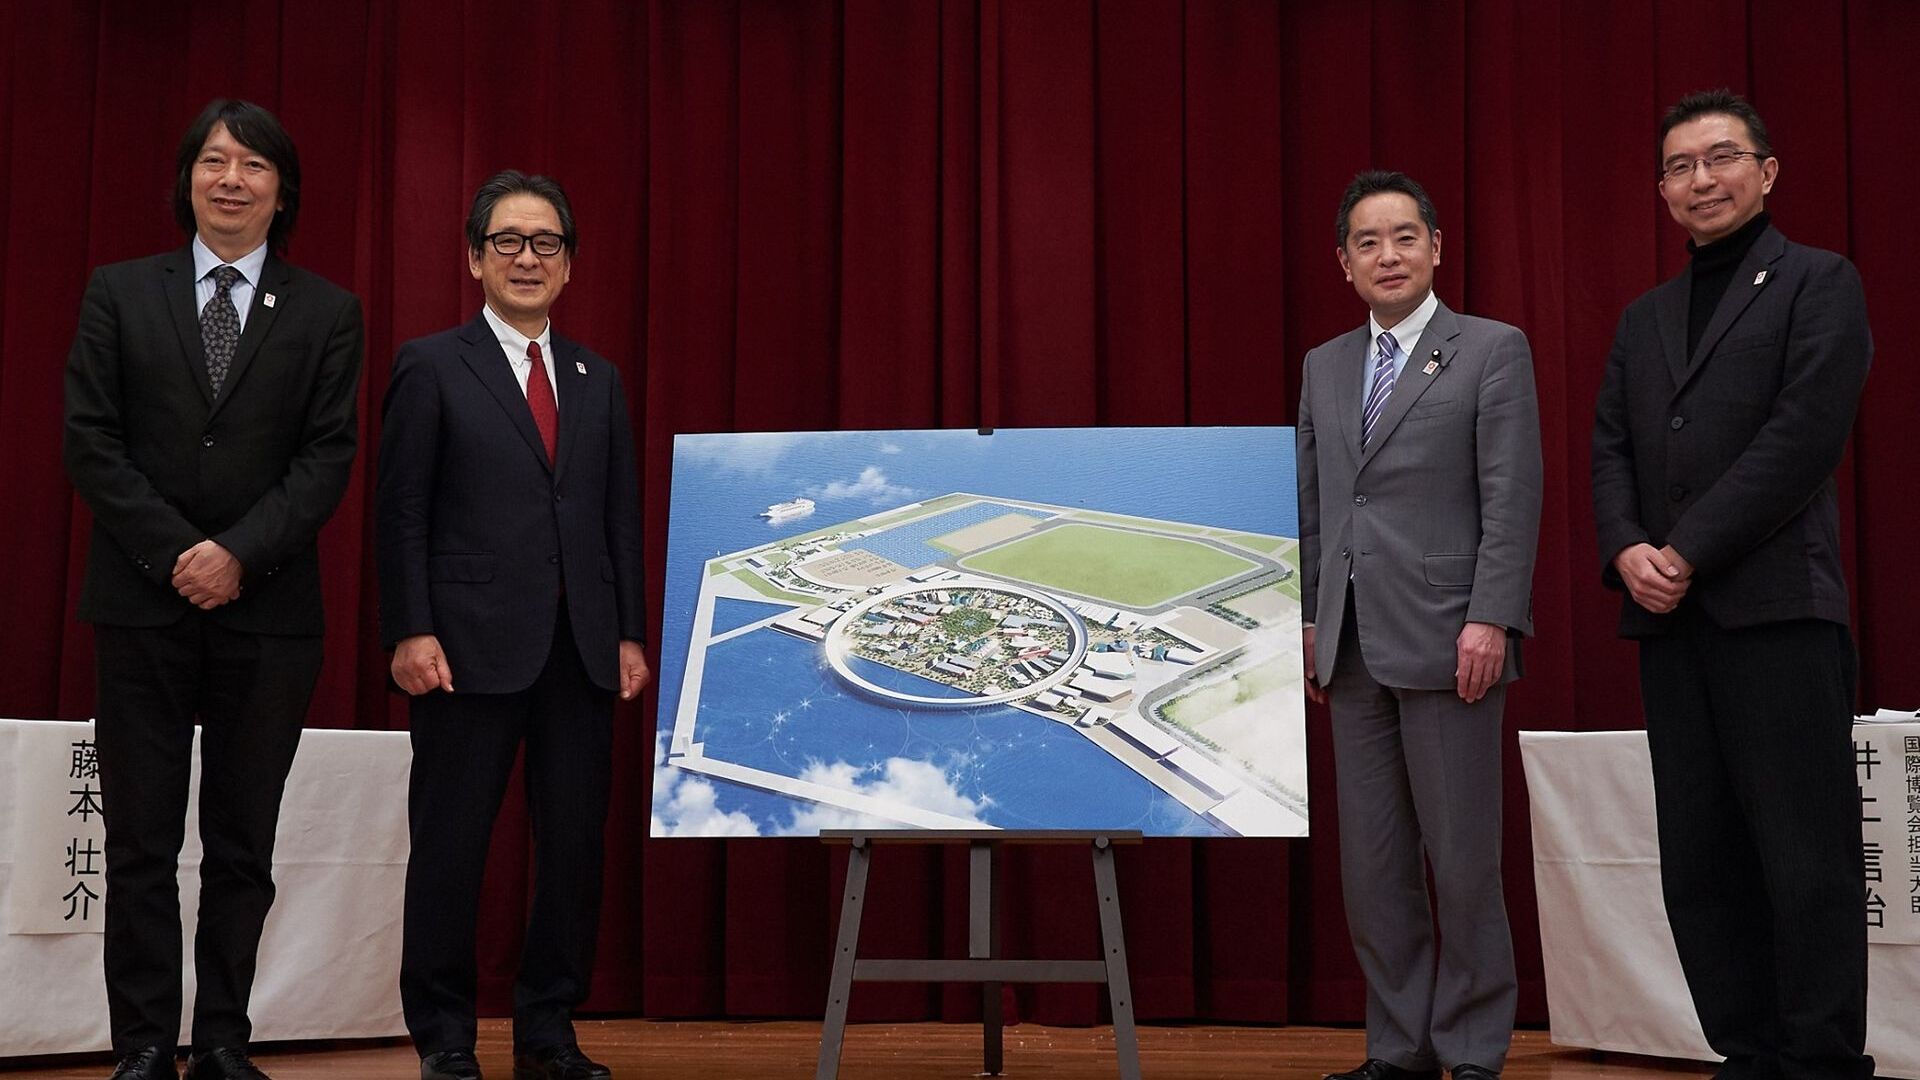 Ceremonia prezentacji terenu przeznaczonego na organizację Wystawy Powszechnej 2025 w Osace (Japonia)